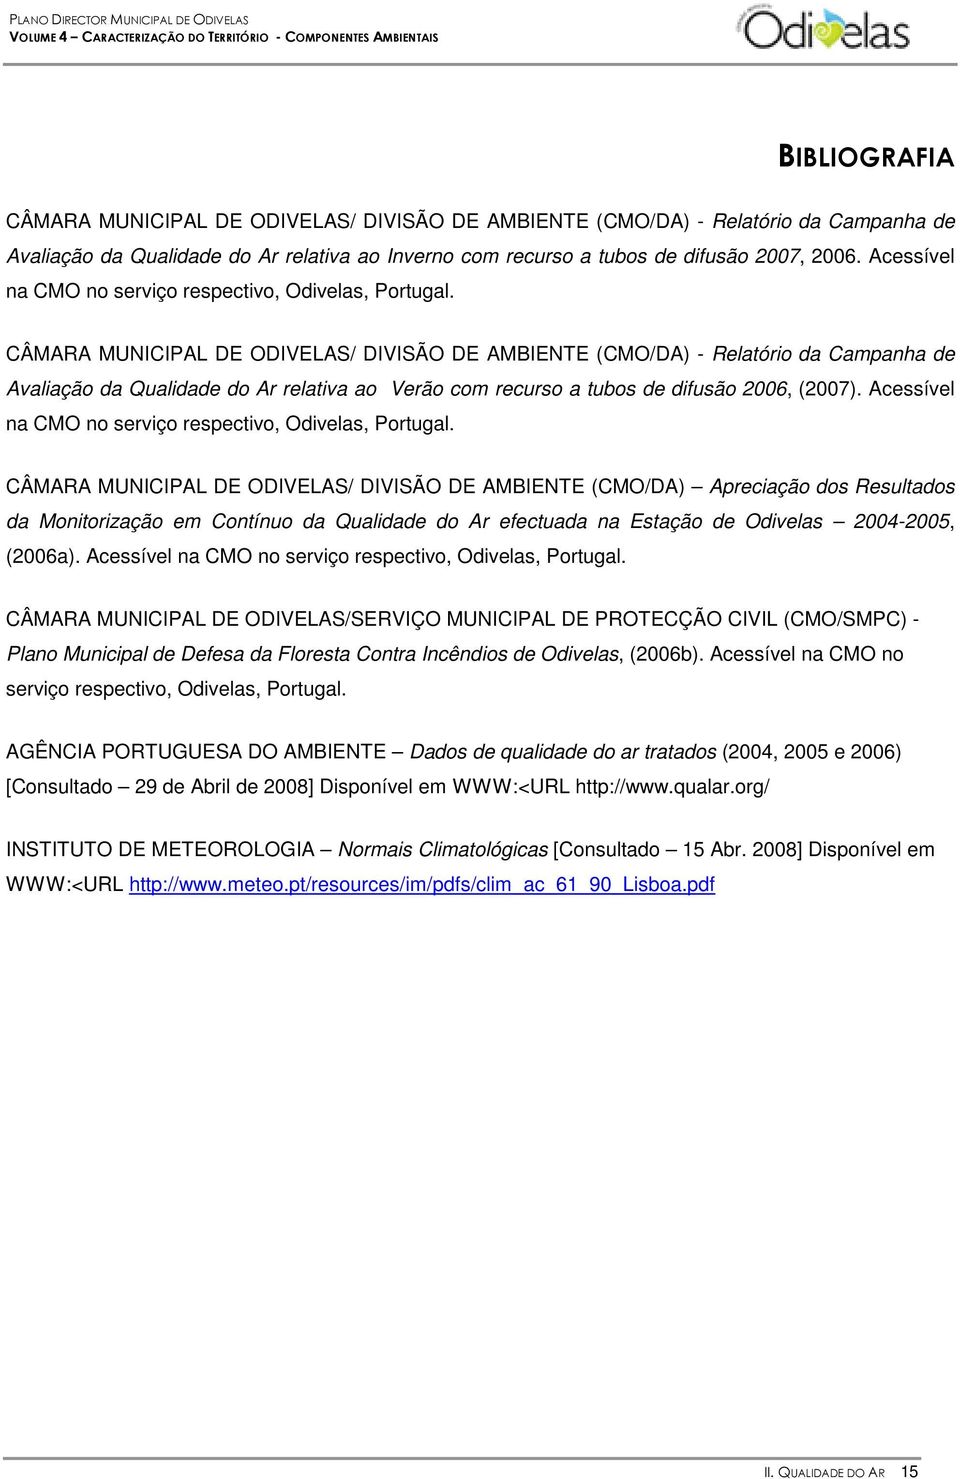 CÂMARA MUNICIPAL DE ODIVELAS/ DIVISÃO DE AMBIENTE (CMO/DA) - Relatório da Campanha de Avaliação da Qualidade do Ar relativa ao Verão com recurso a tubos de difusão 2006, (2007).